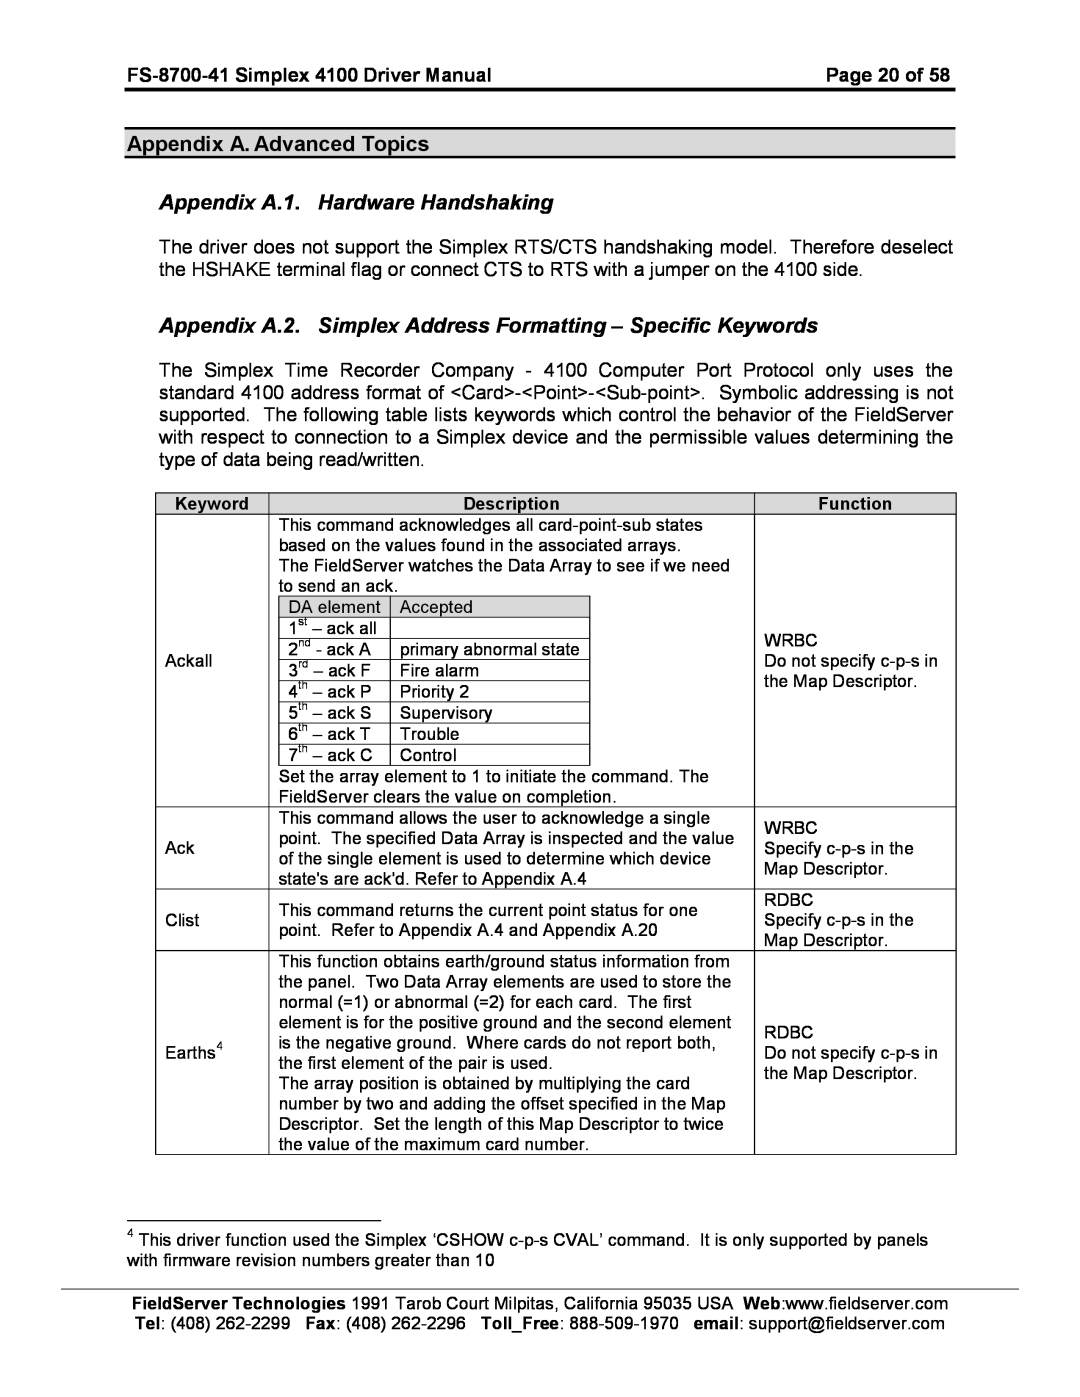 FieldServer FS-8700-41 instruction manual Appendix A. Advanced Topics Appendix A.1. Hardware Handshaking 